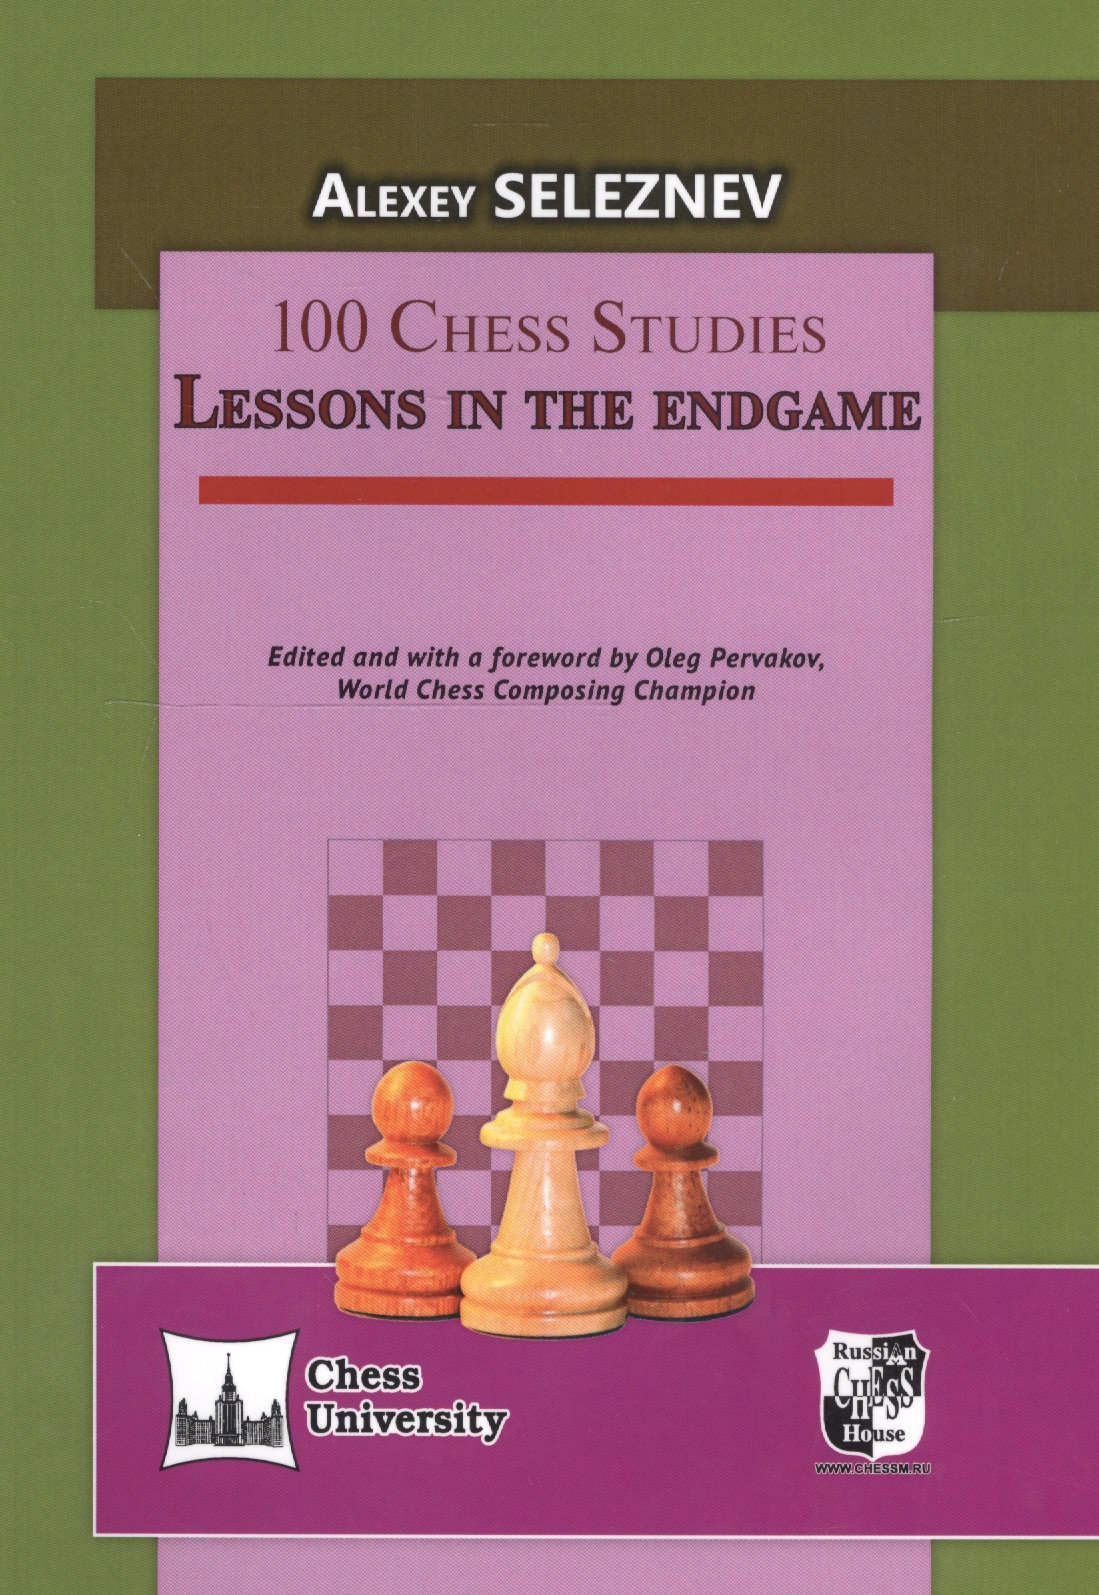 100 Chess Studies